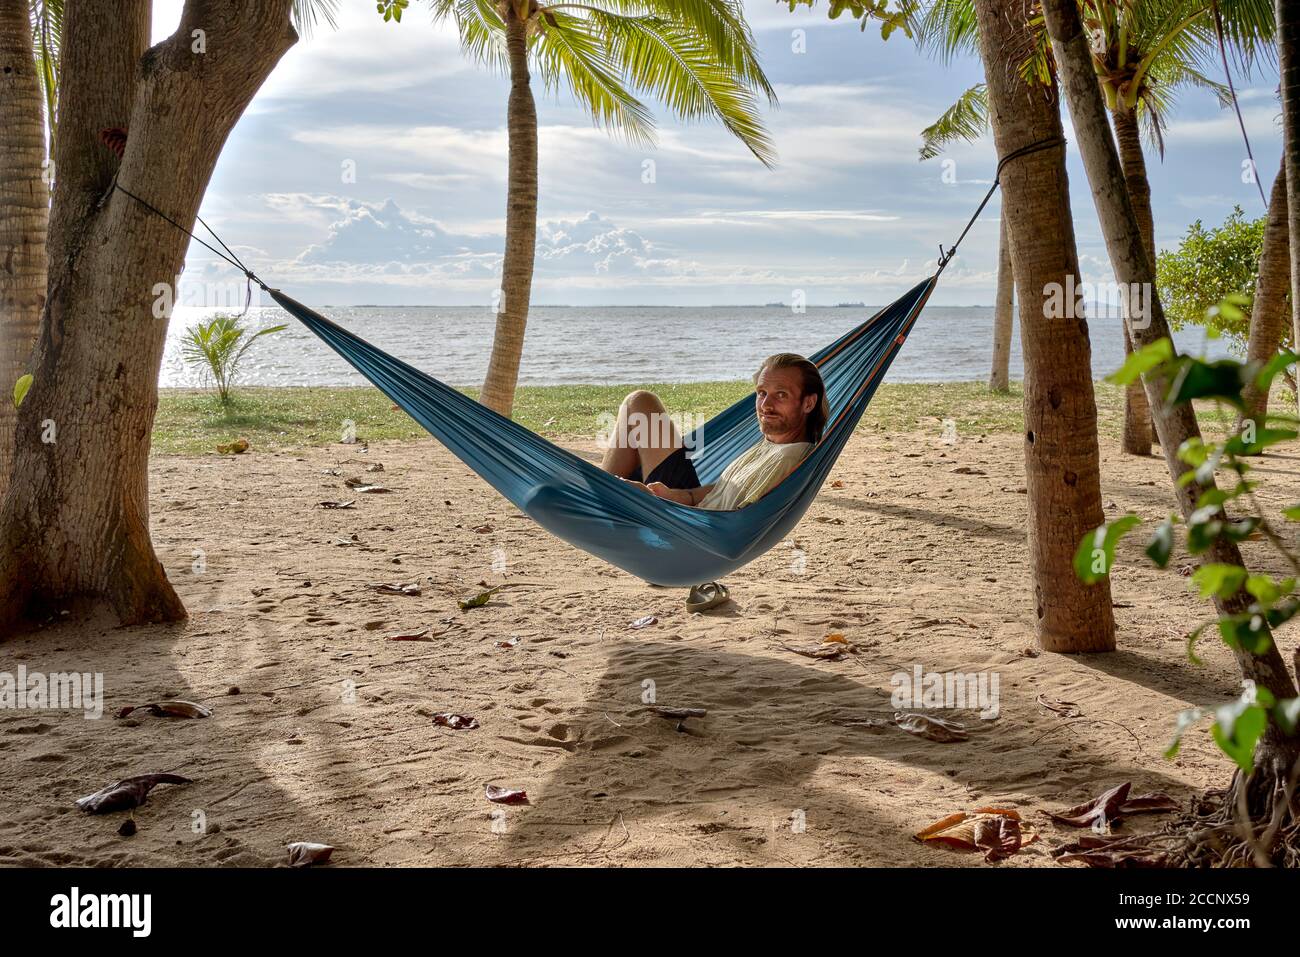 Plage hamac. Homme se détendant dans un hamac accroché entre les arbres sur  une plage tropicale contre le soleil couchant. Thaïlande Asie du Sud-est  Photo Stock - Alamy